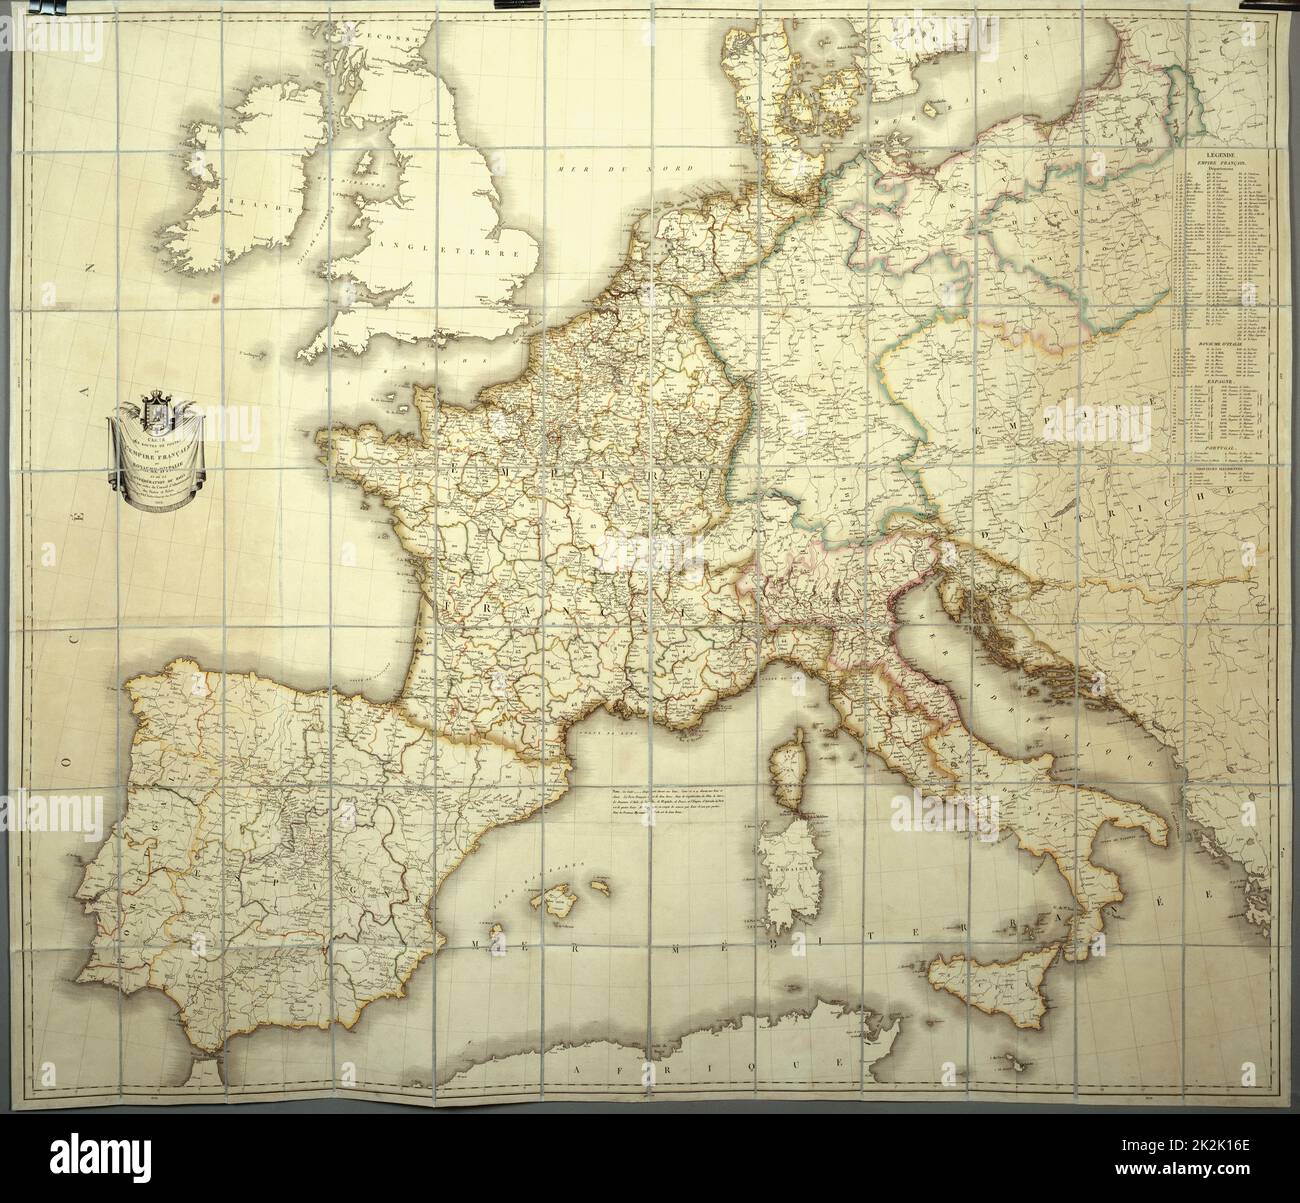 Mappa dell'Impero Francese nel 1812 Copia personale dell'Imperatore per il suo studio topografico carta rivestita di seta (110 x 80 cm) Una scatola contiene la mappa (vedi PJC03041 CHA288) Foto Stock